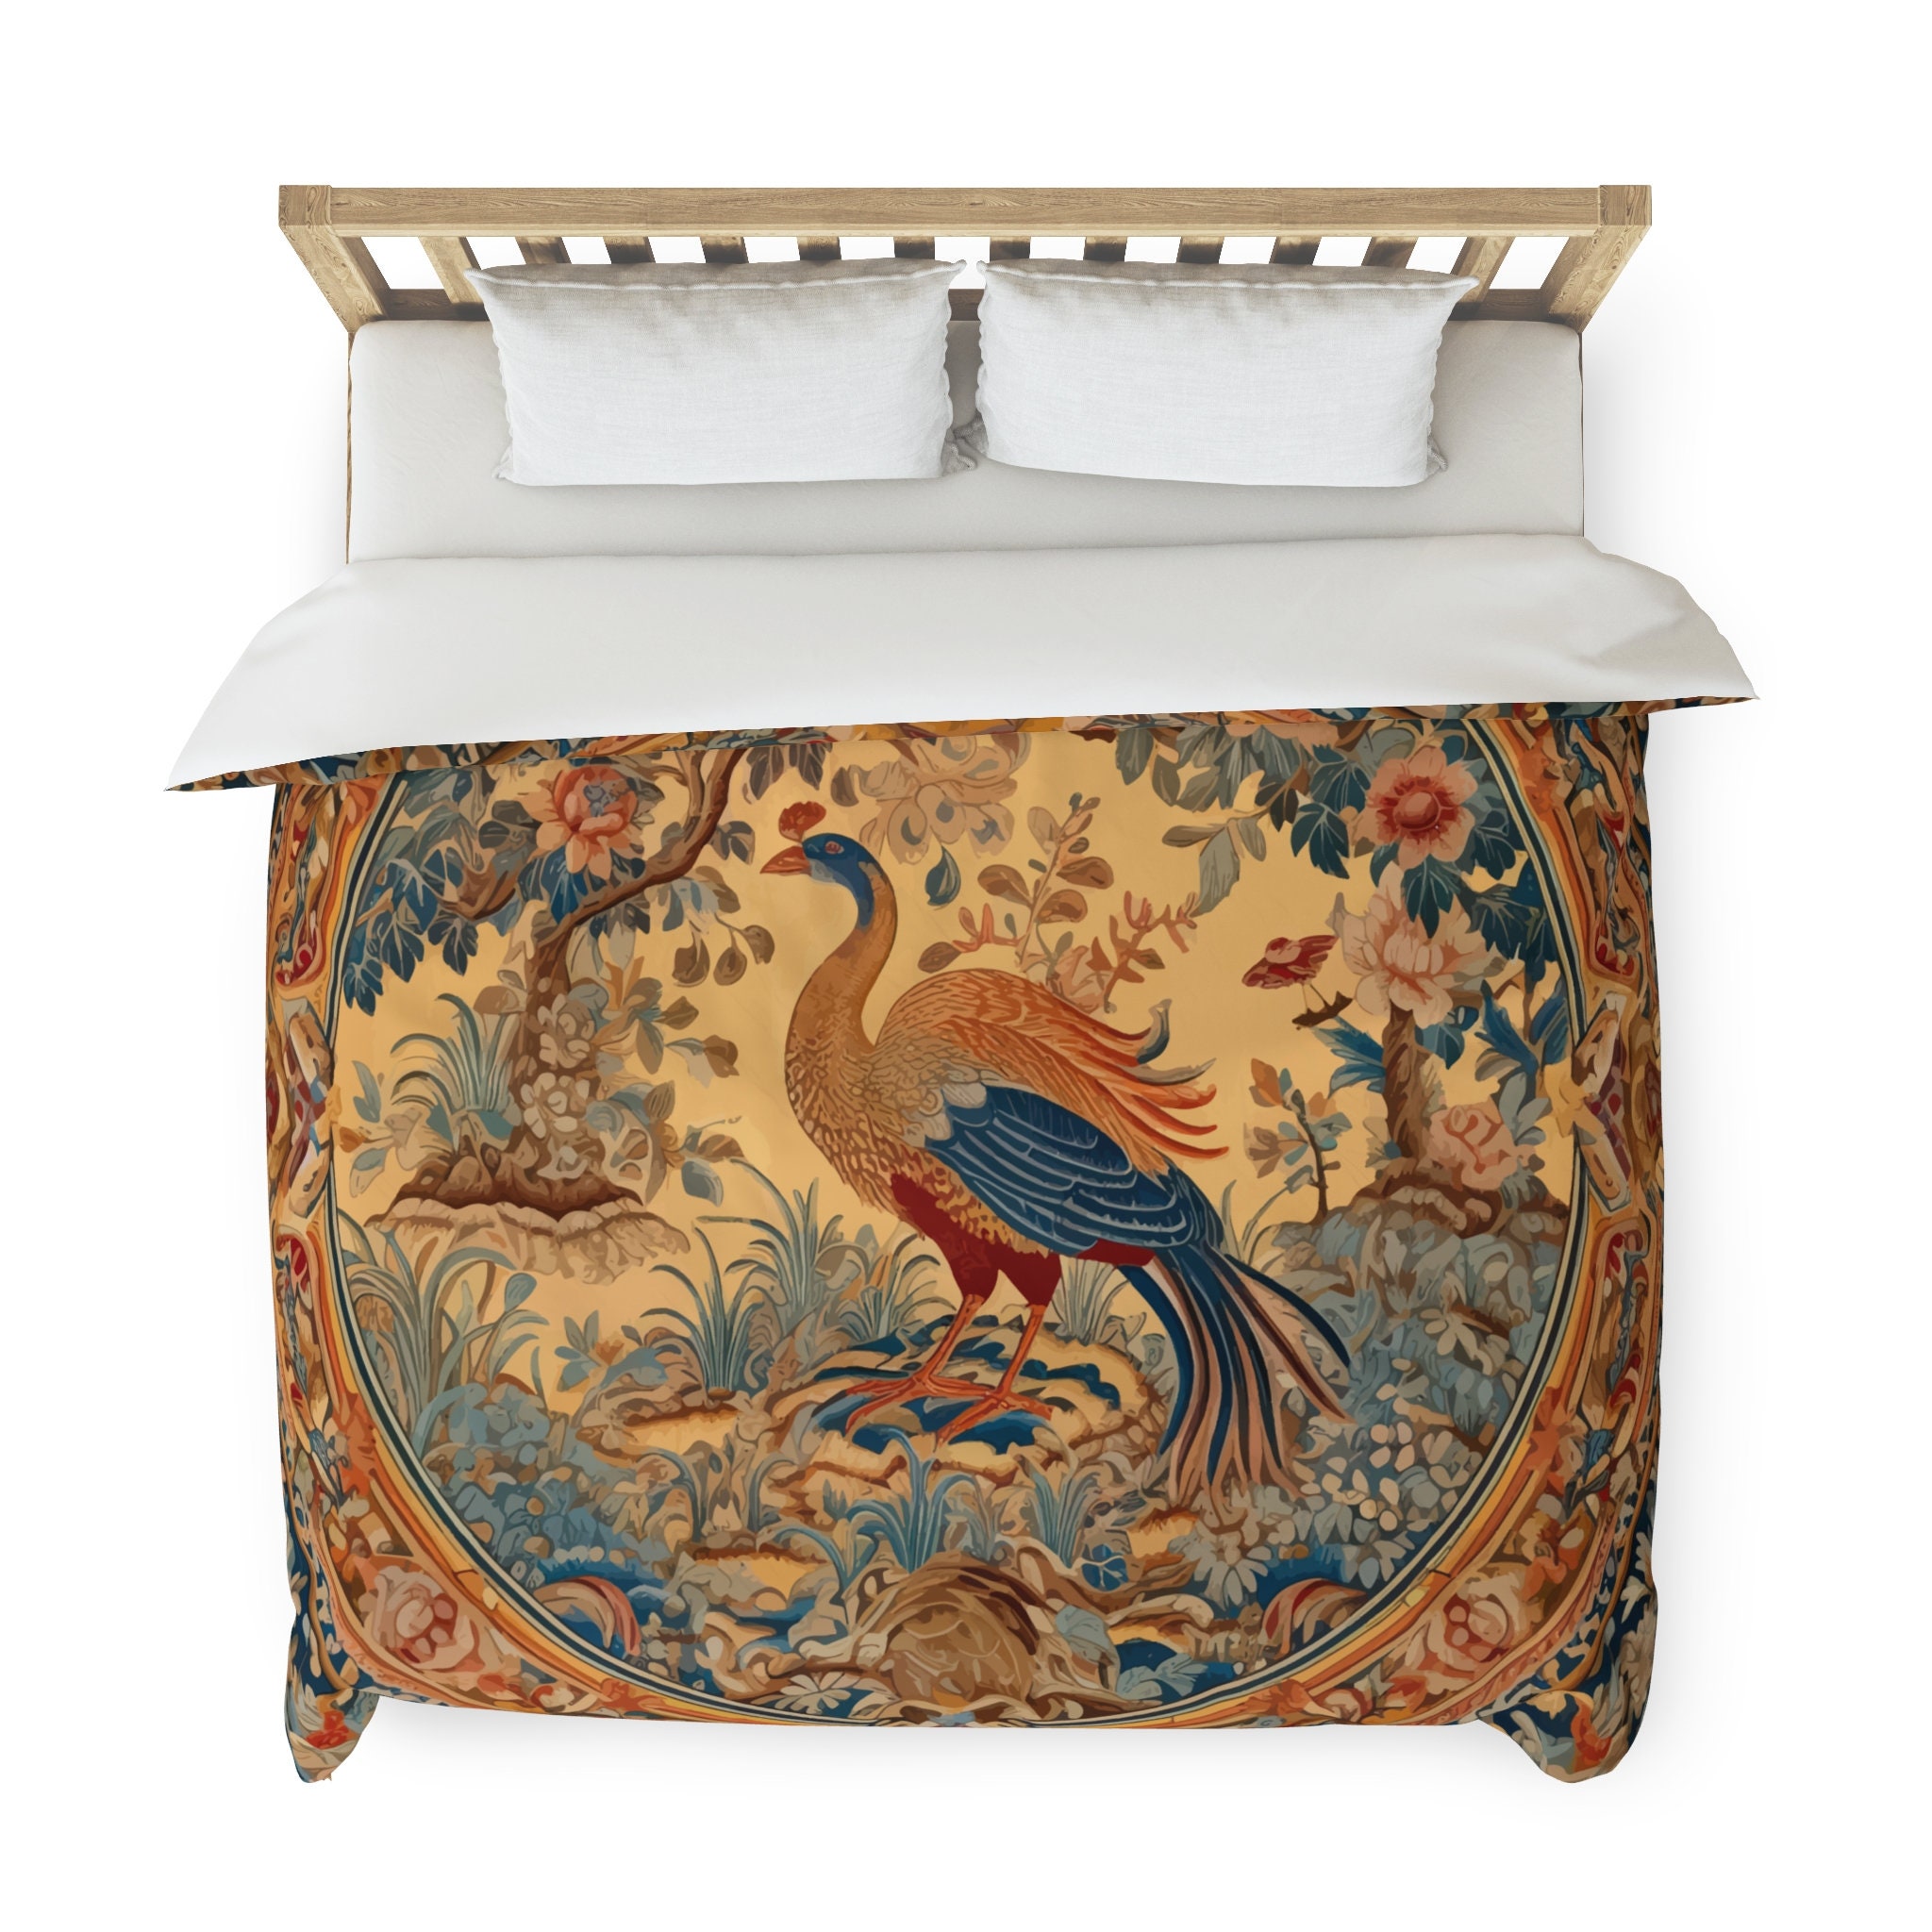 Colorful peacock decor aesthetic bedding set full, luxury duvet cover